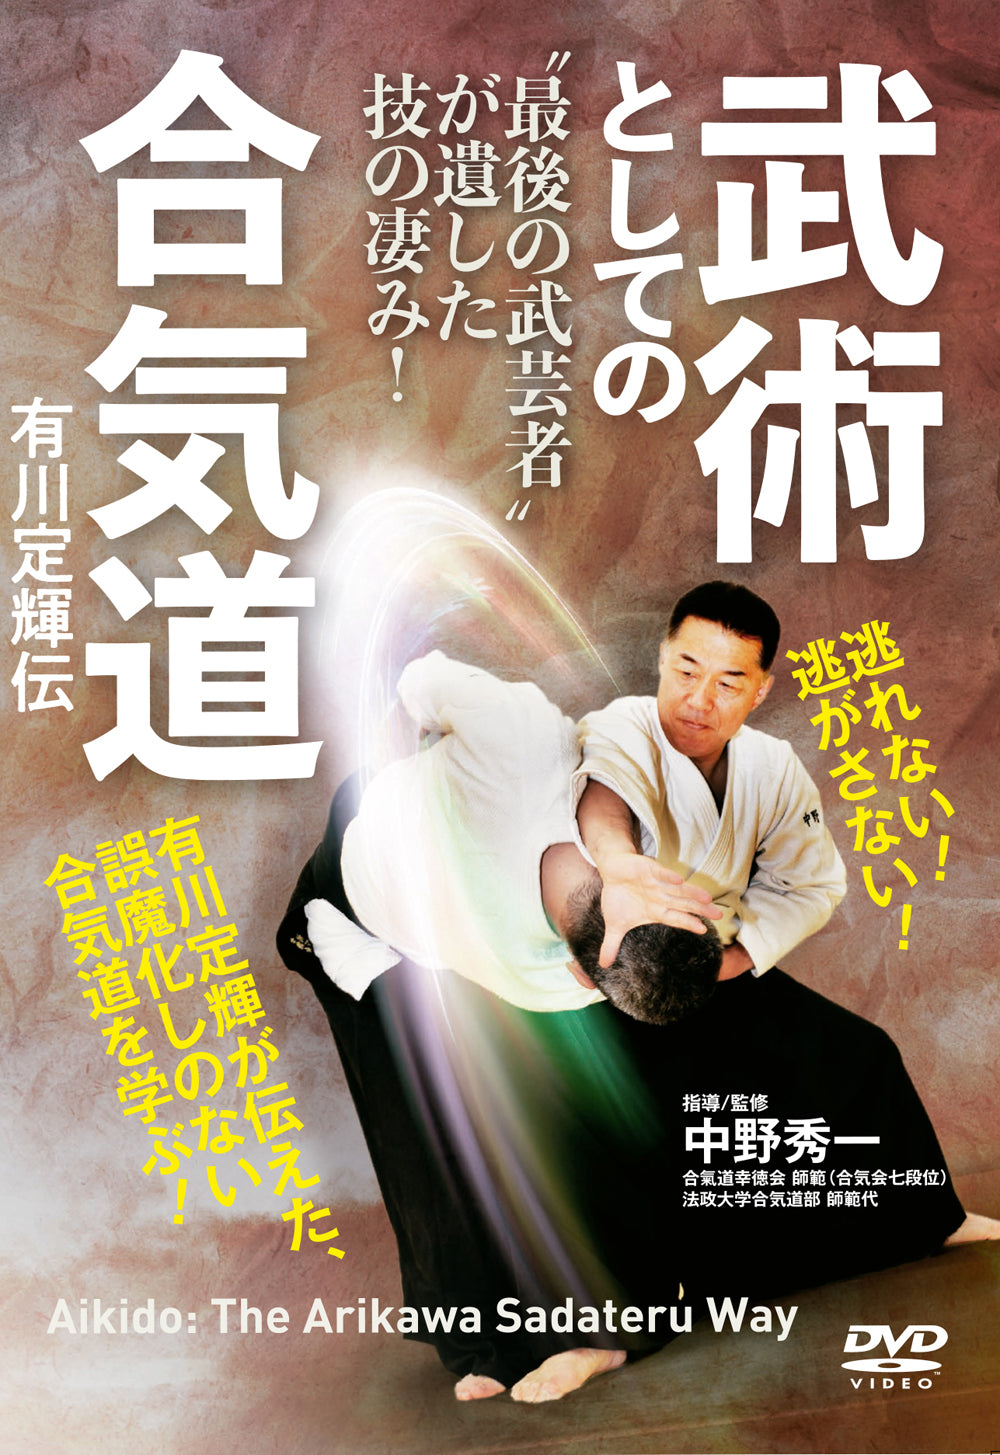 Aikido the Sadateru Arikawa Way DVD by Shuichi Nakano